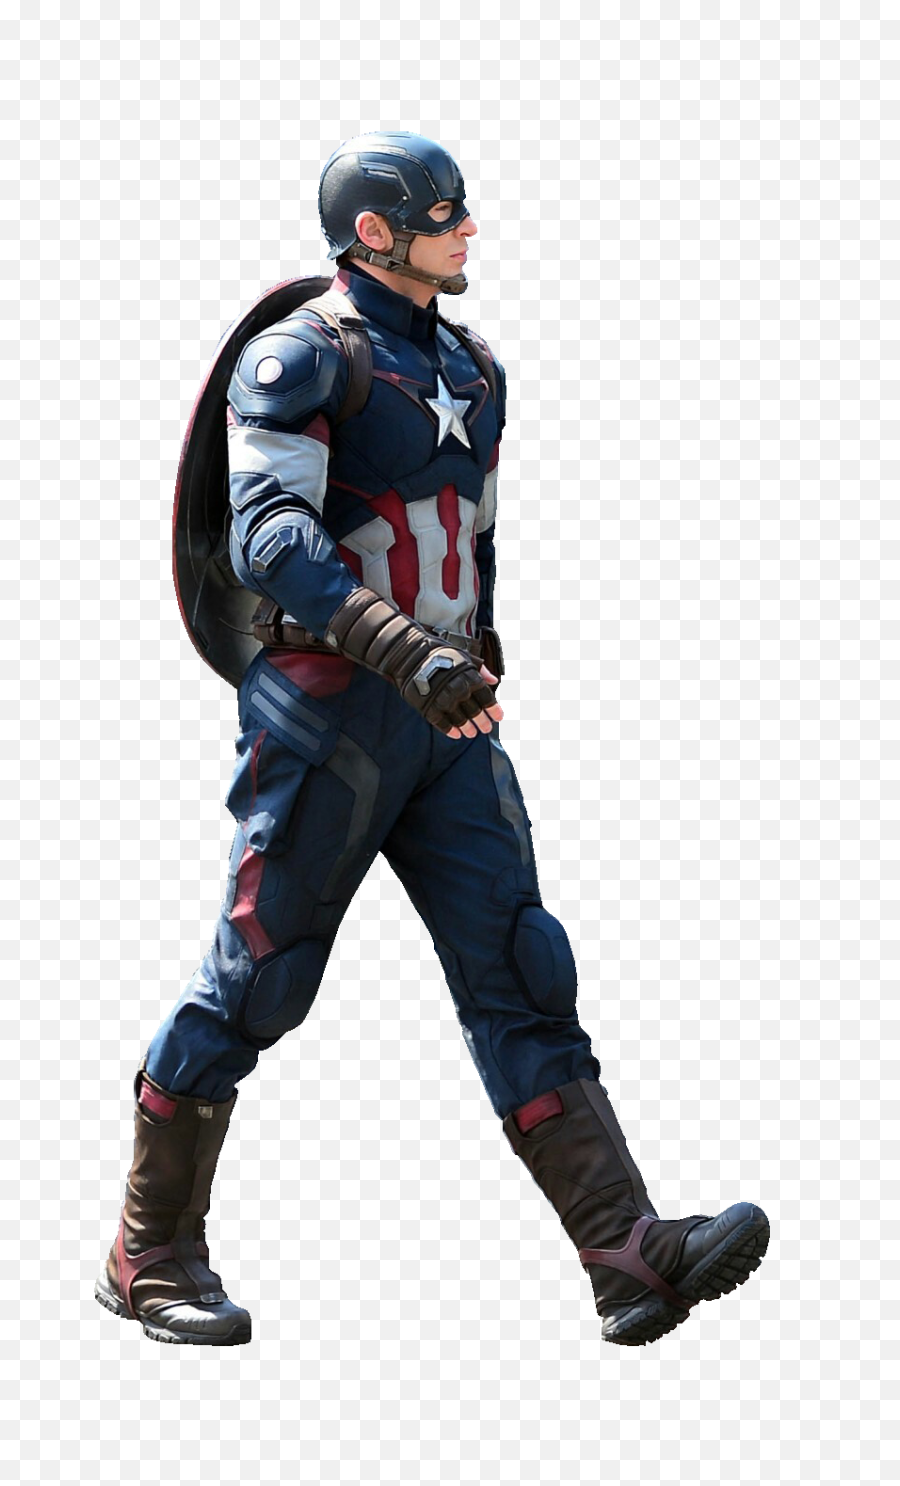 Png Images Transparent - Captain America Mcu Suit,Captain America Png